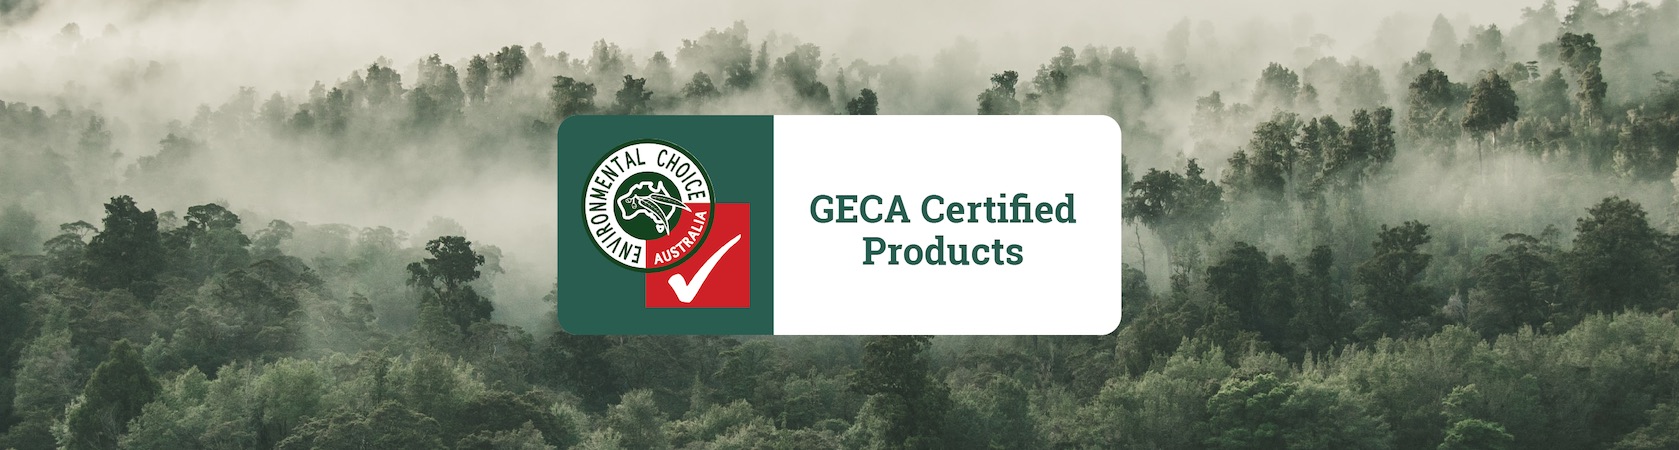 Banners_GECA-Certified